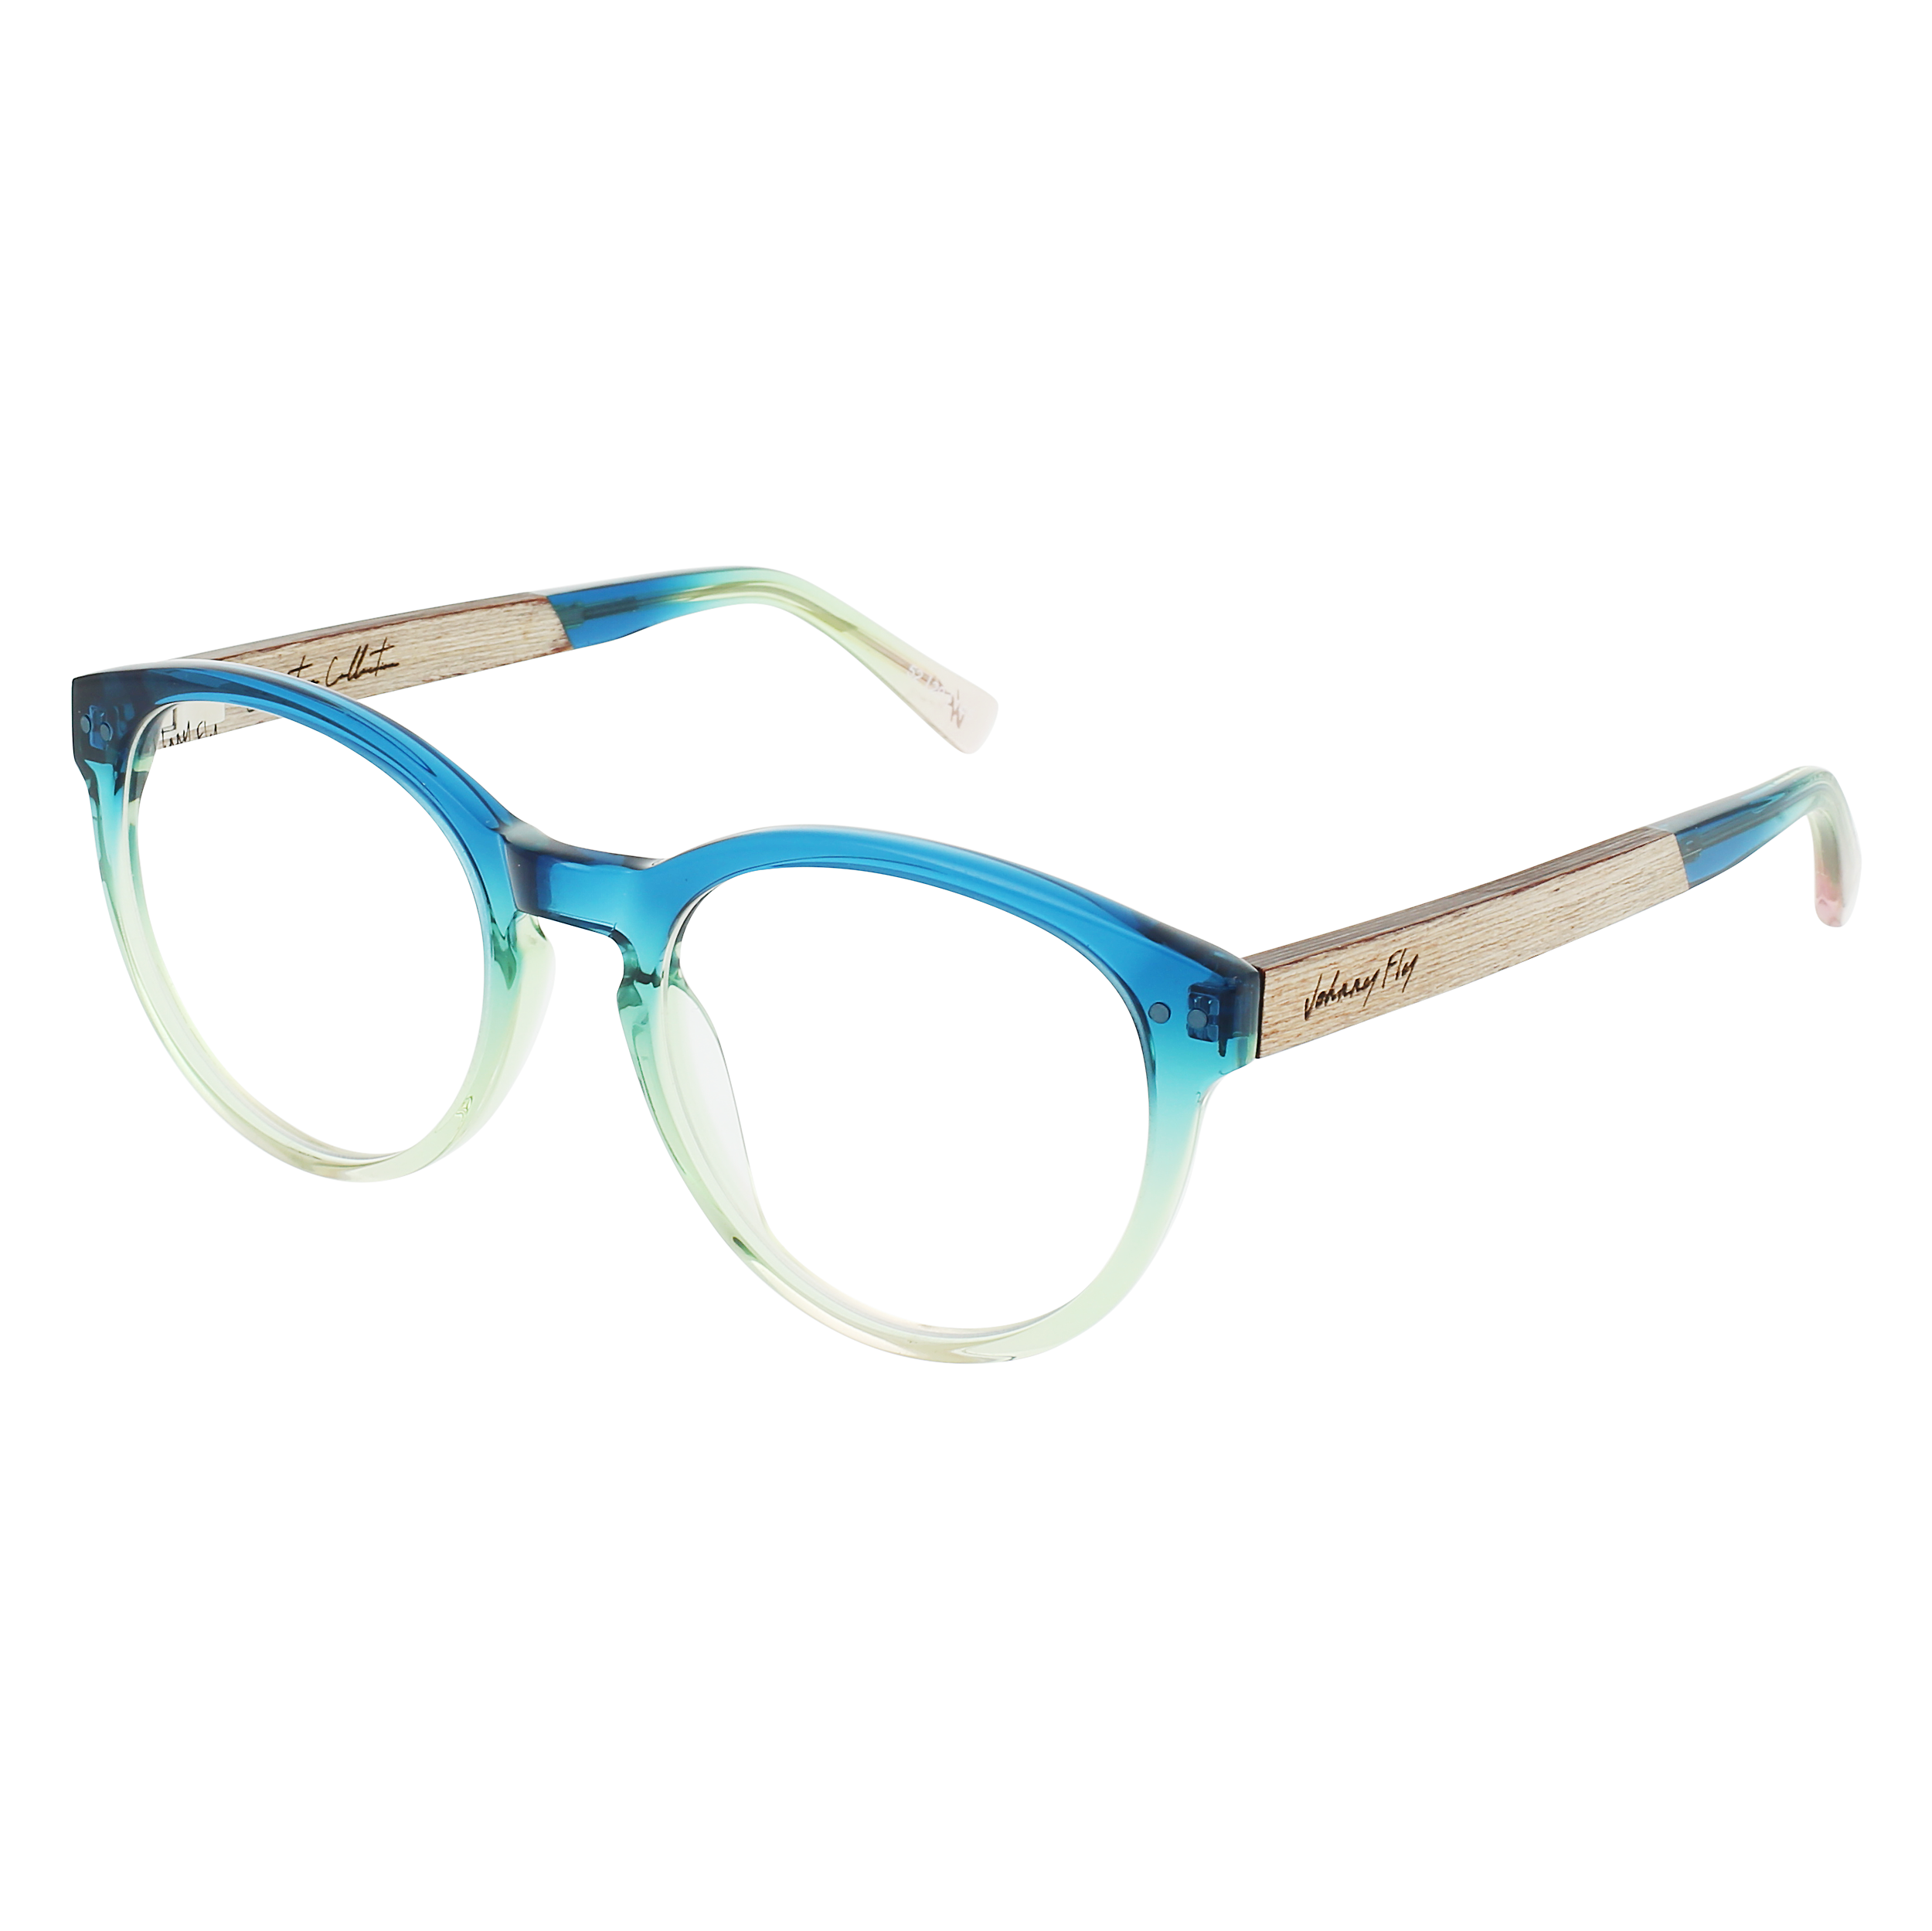 LATITUDE Eyeglasses Frame - Tide- Johnny Fly | LTS-TIDE-FRAME | | 